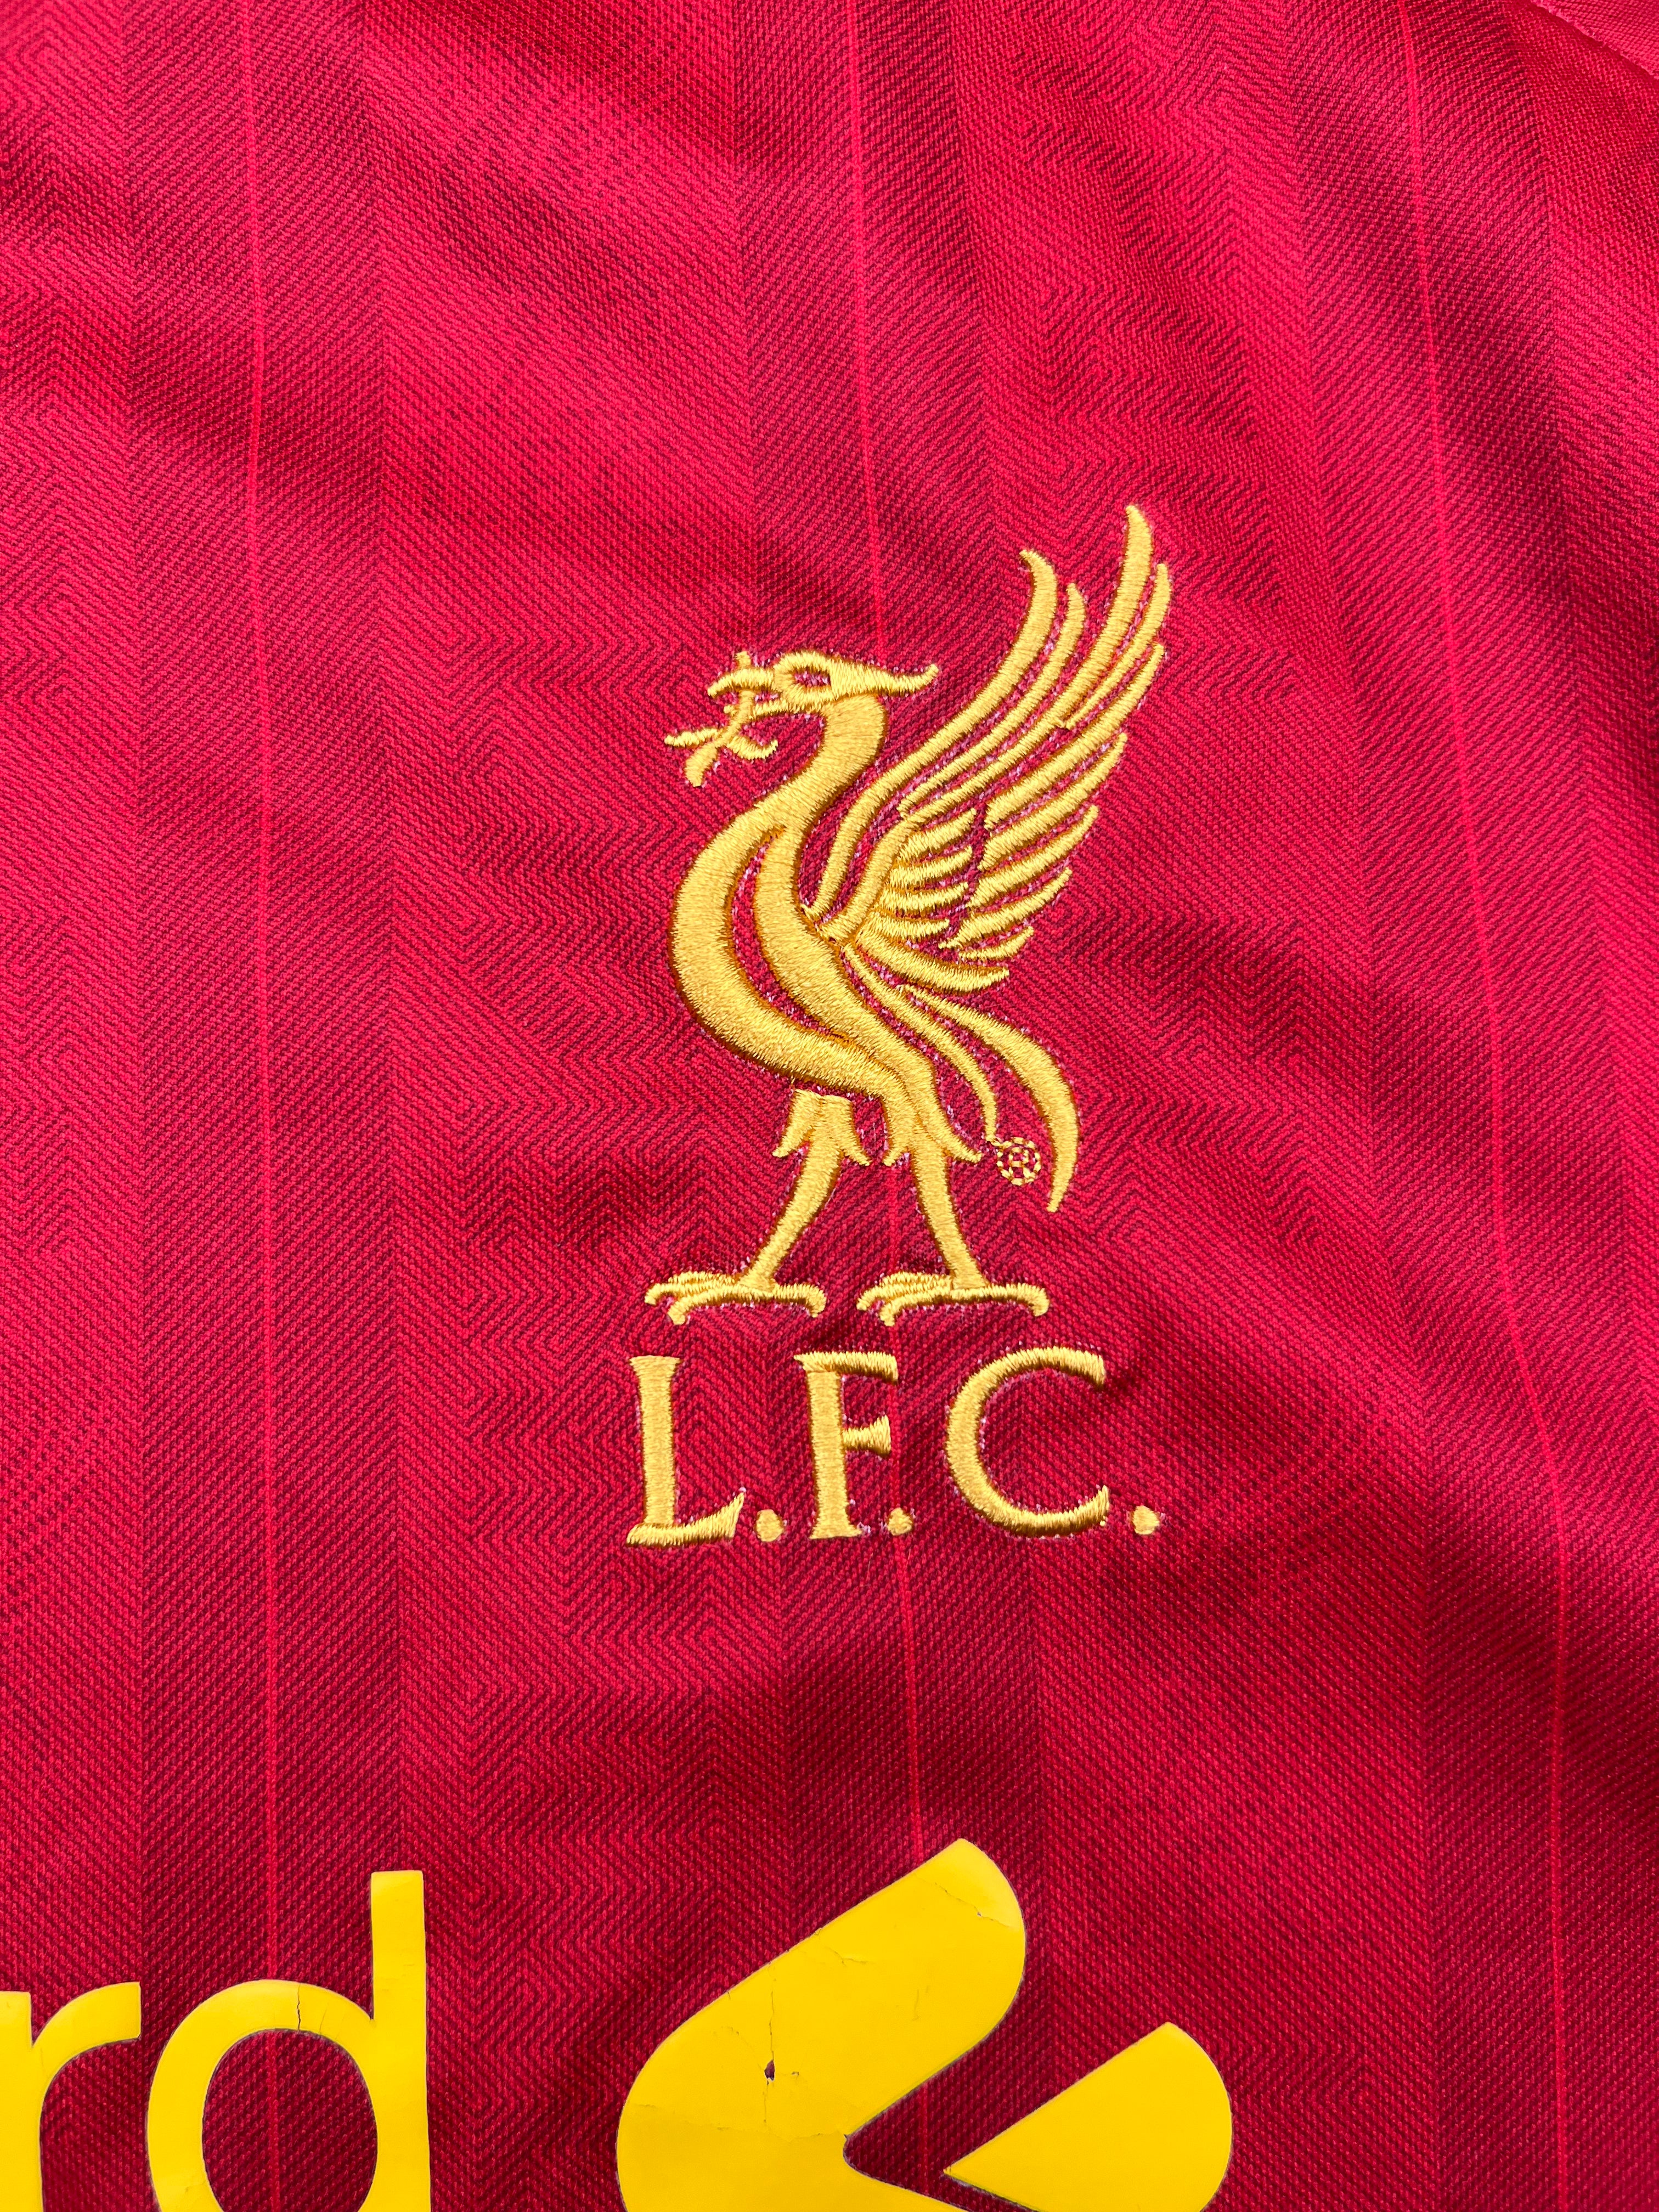 Camiseta de local del Liverpool 2013/14 (XL) 8/10